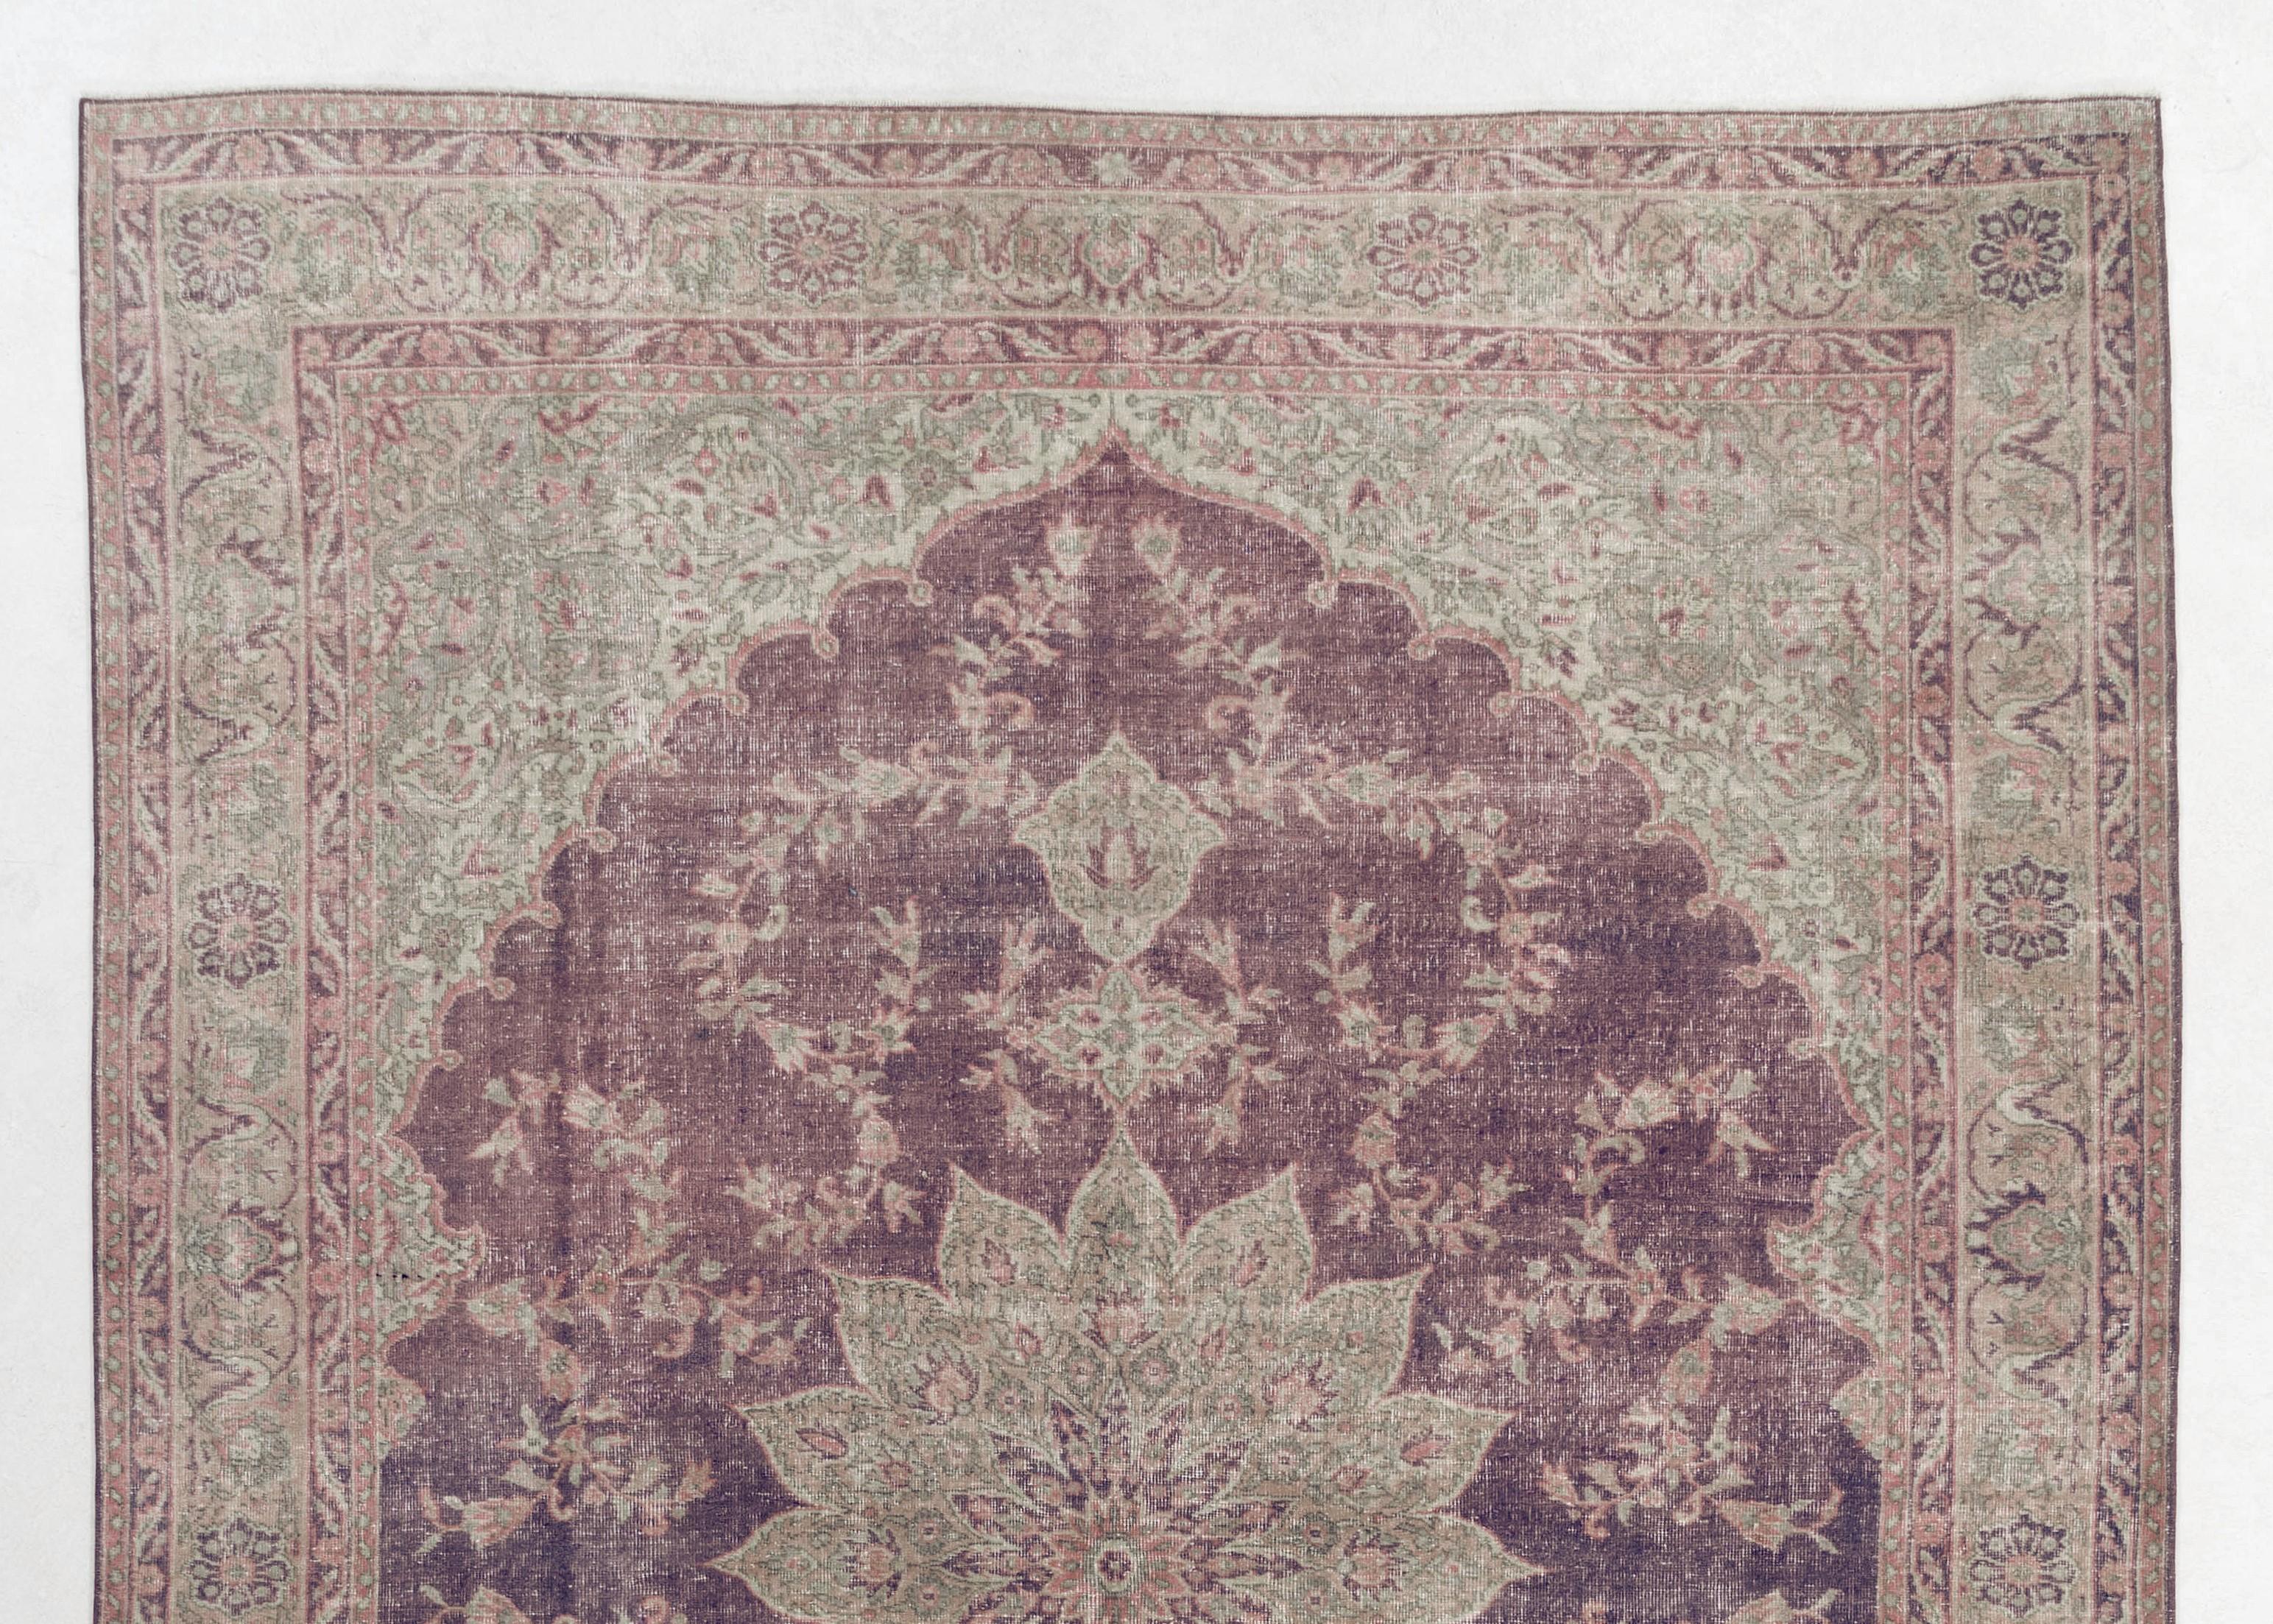 Ce tapis turc vintage des années 1960, finement noué à la main, présente un motif de médaillon européen très populaire. Mesures : 8x11.3 ft.
Le tapis a des poils de laine uniformément bas sur une base en coton. Il est lourd et repose à plat sur le